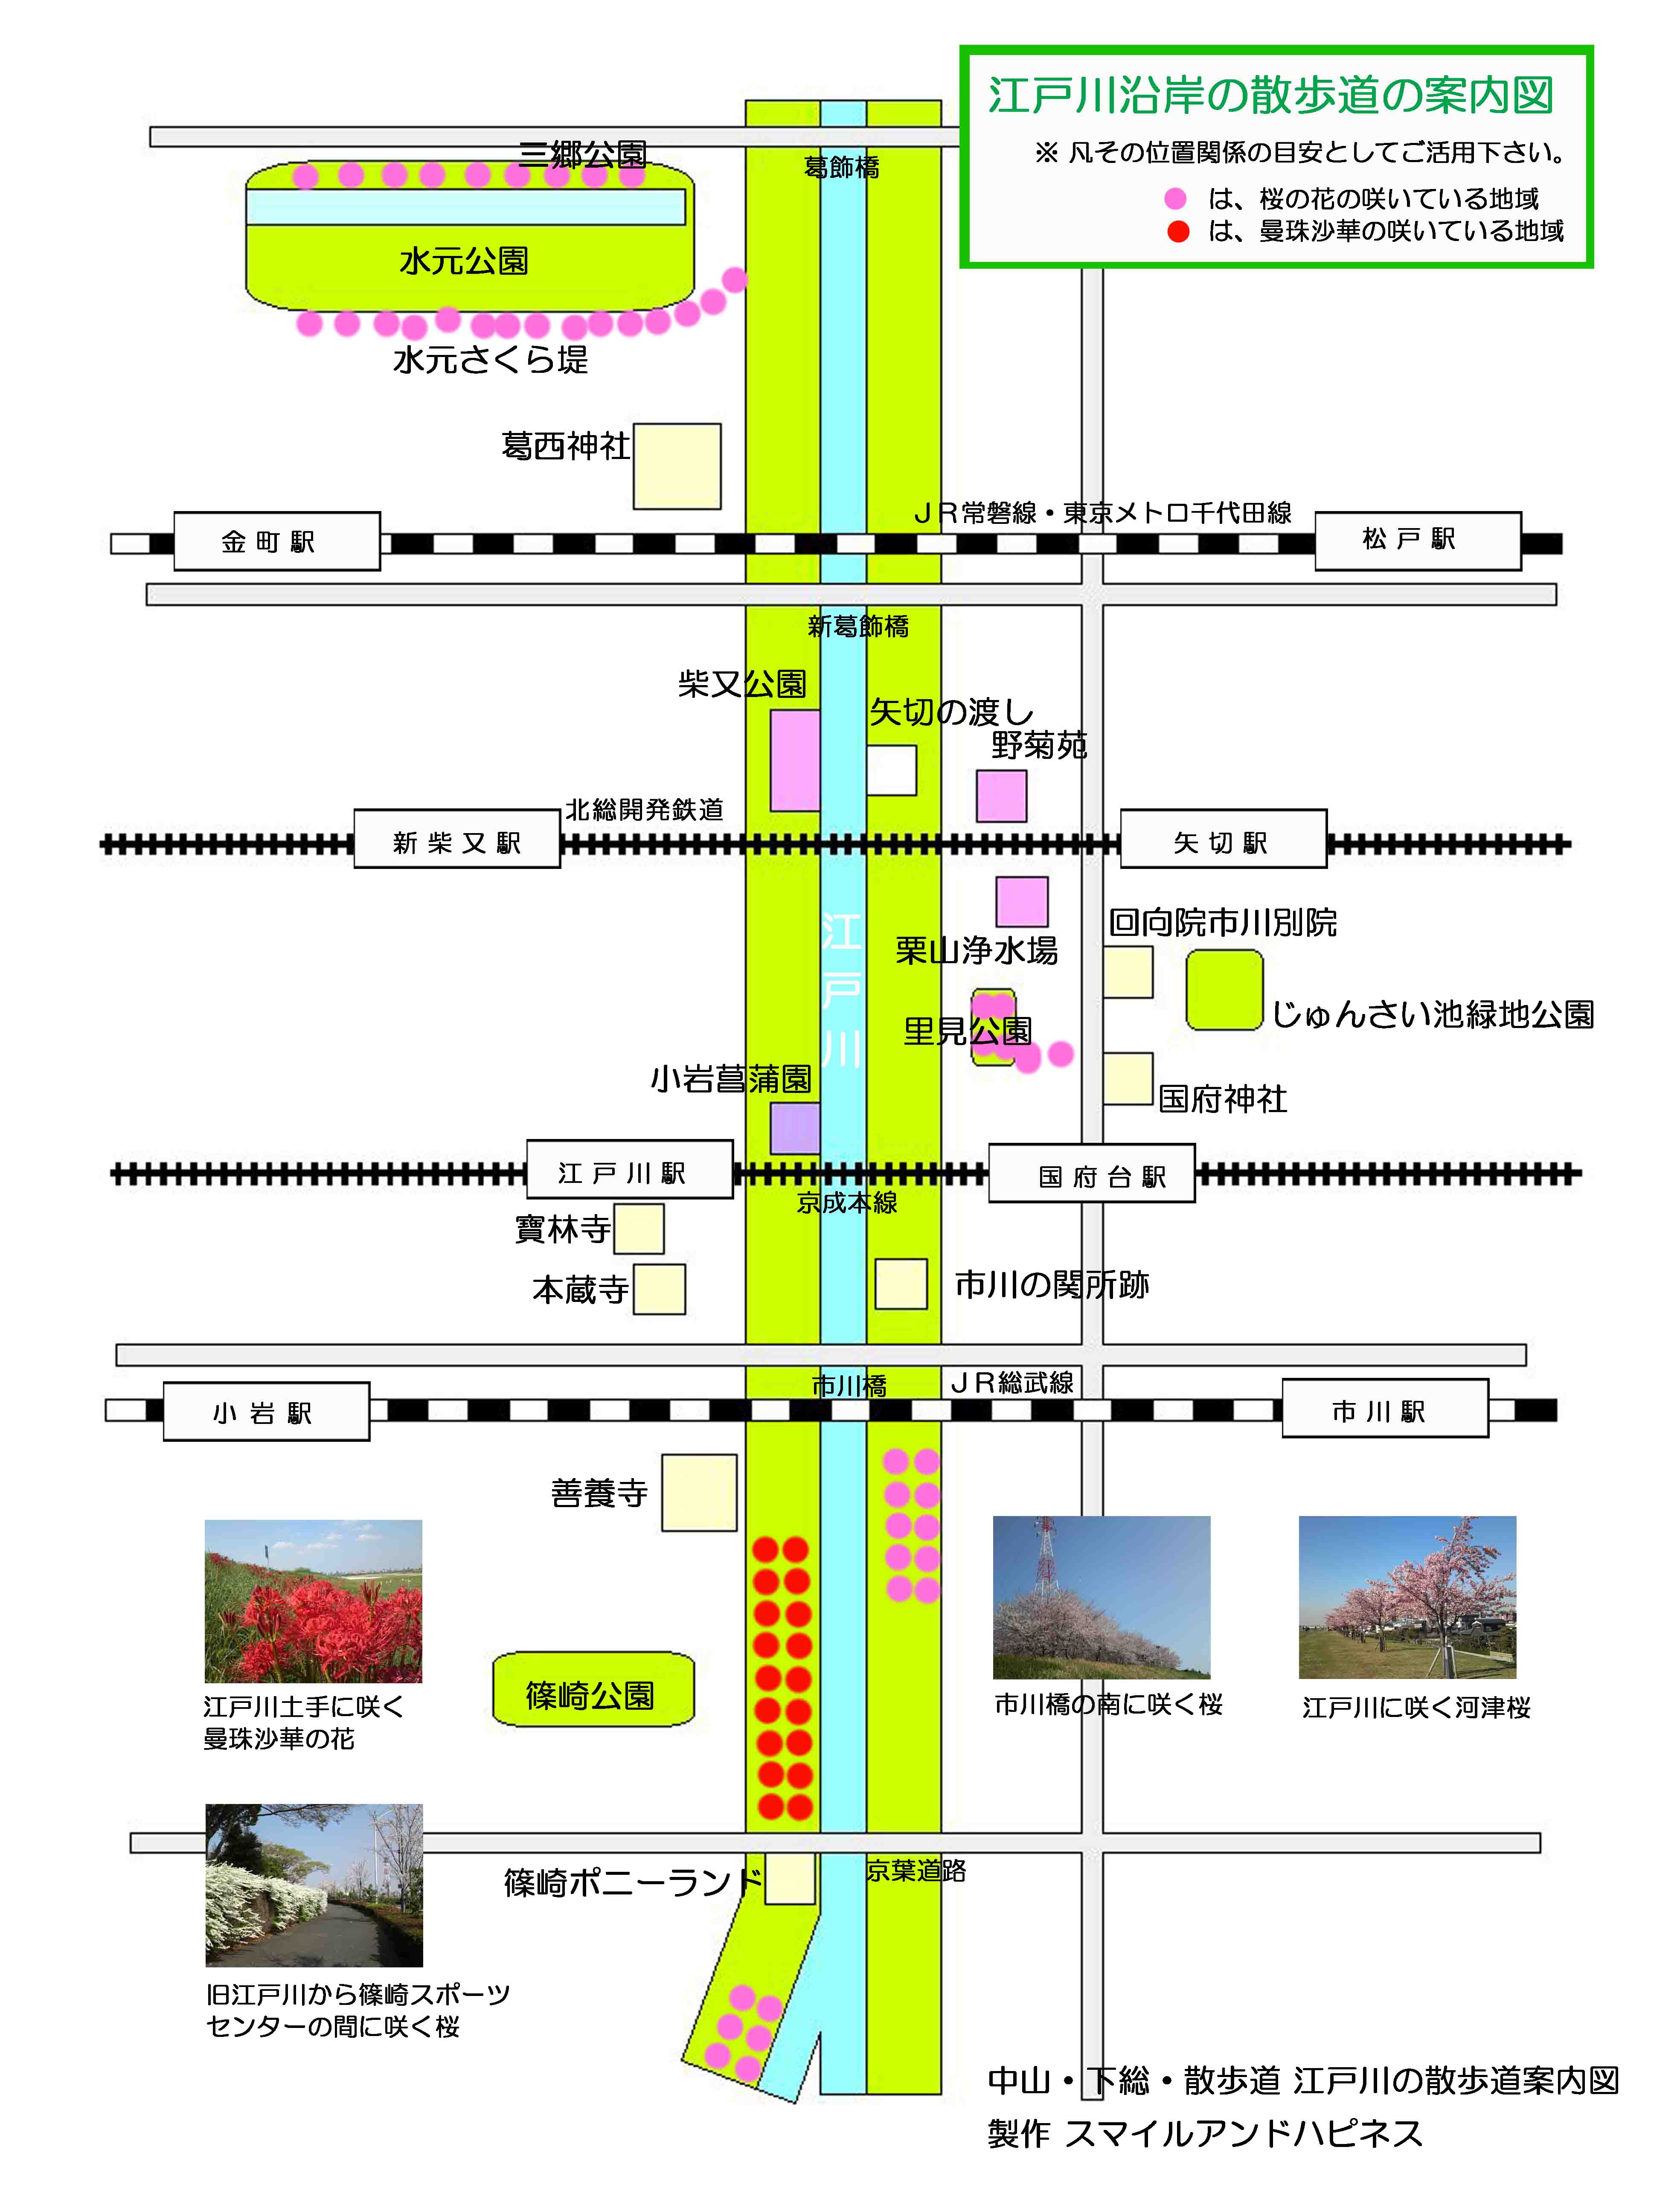 葛西神社と江戸川の地図